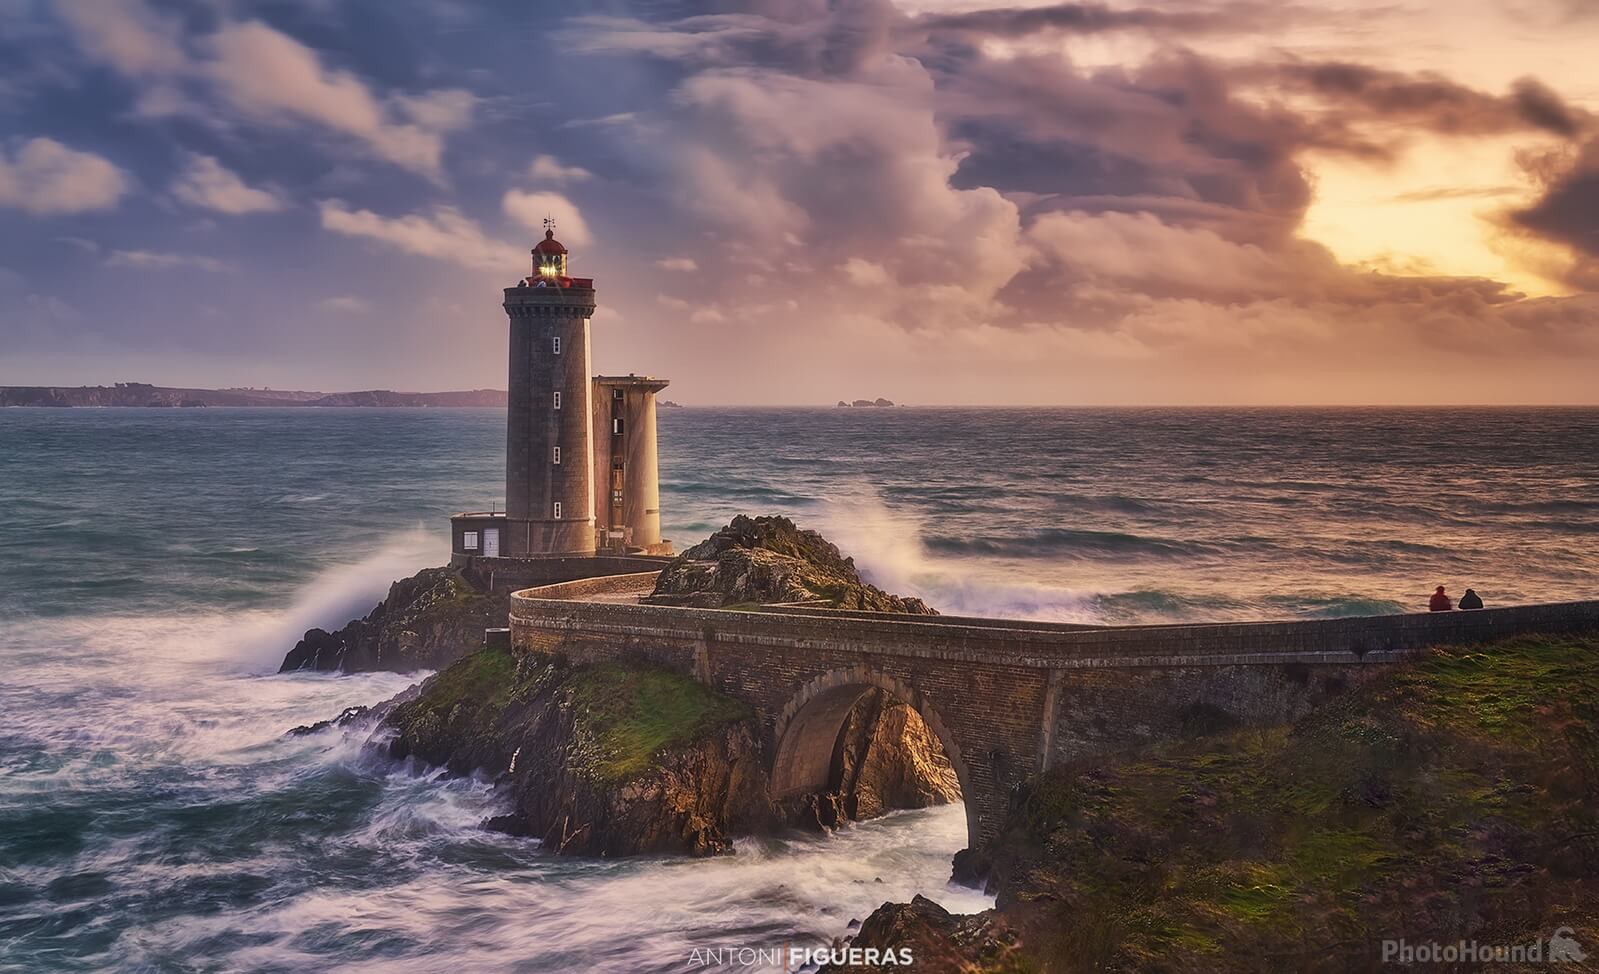 Image of Le Phare du Petit Minou (Lighthouse) by Antonio Figueras Barranco